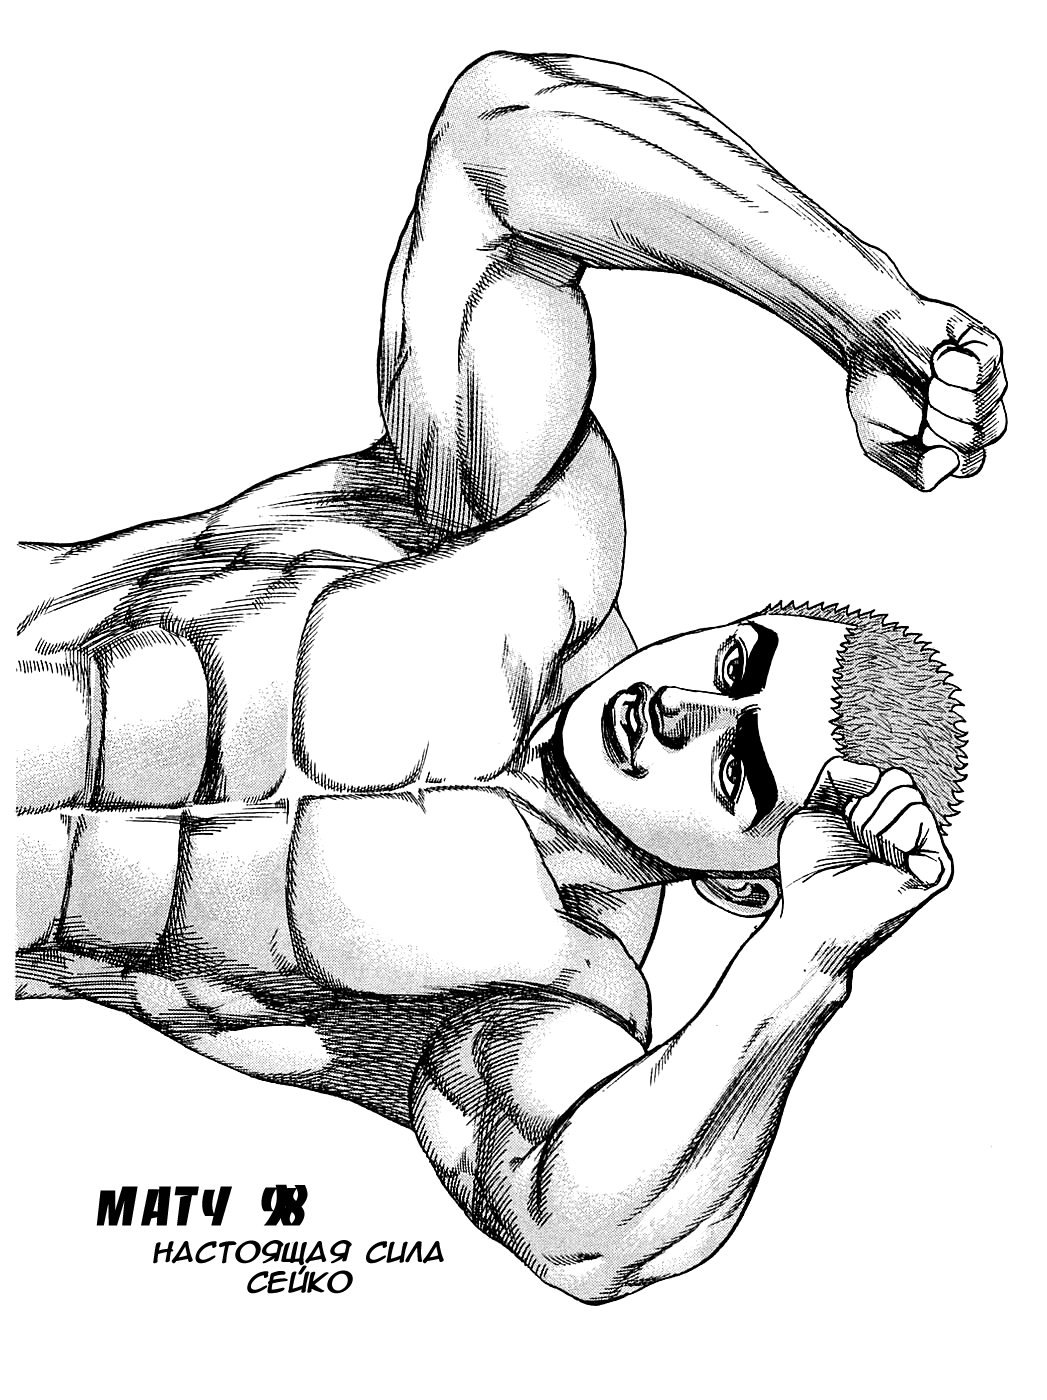 Сейко Миядзава Манга. Техника выполнения упражнения Сейко. Muscle Saiko. Яой манга мускулы